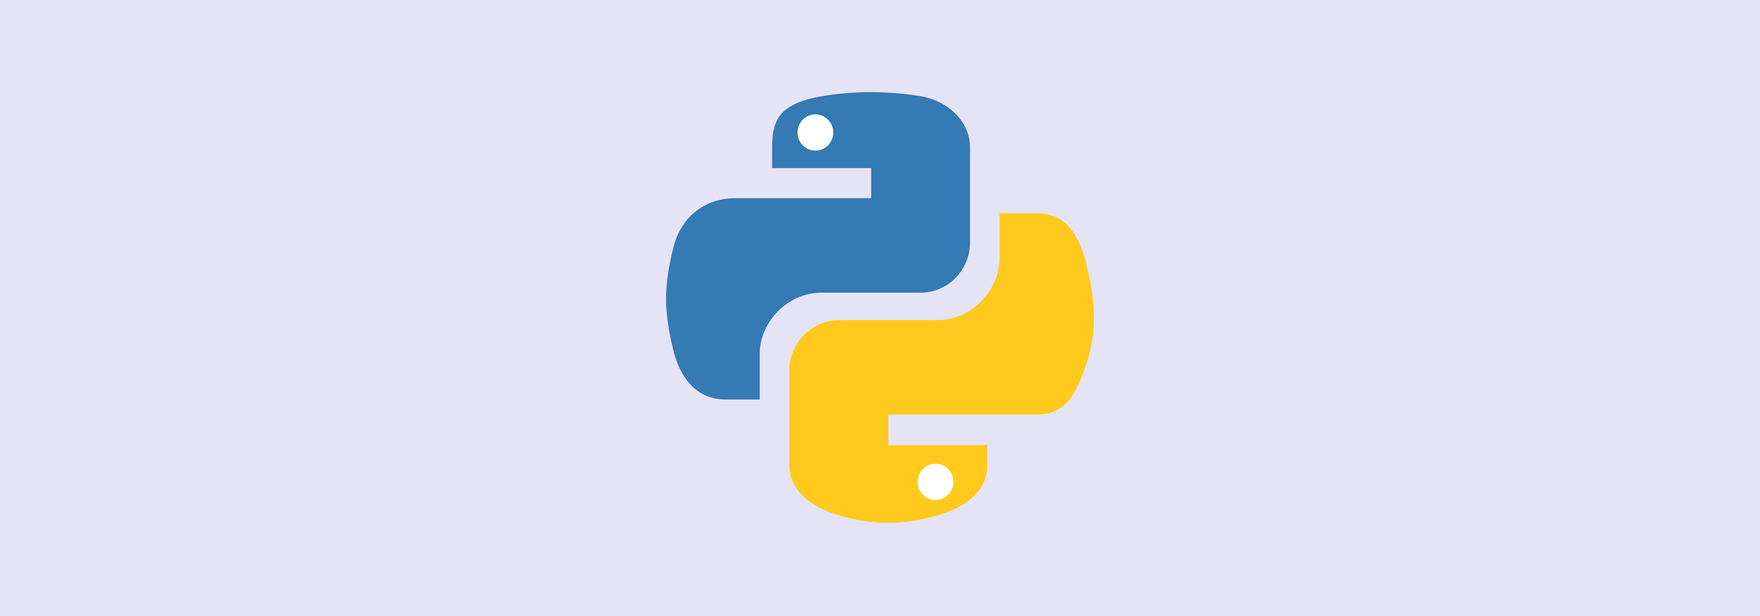 Тестируем на Python: unittest и pytest. Инструкция для начинающих 